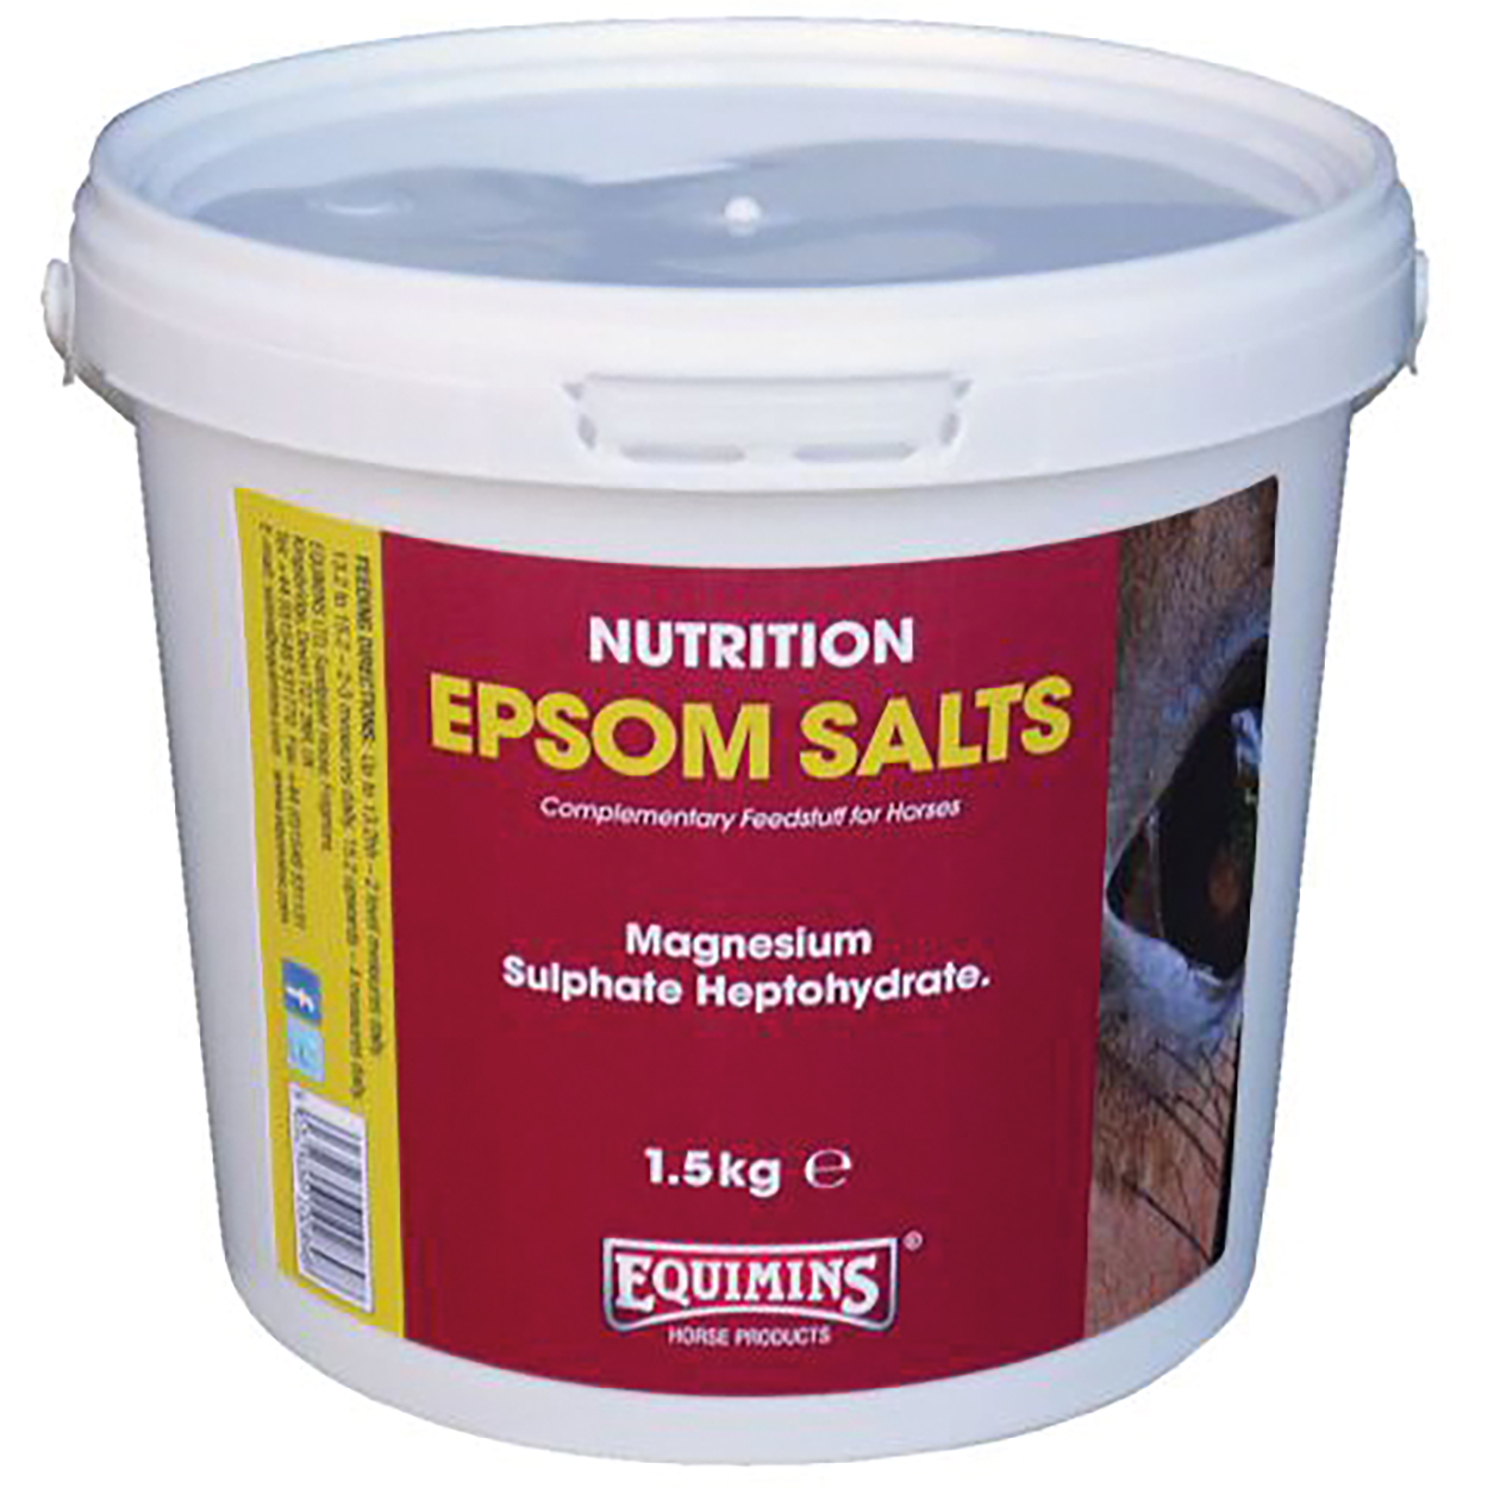 EQUIMINS EPSOM SALTS 1.5 KG TUB 1.5 KG